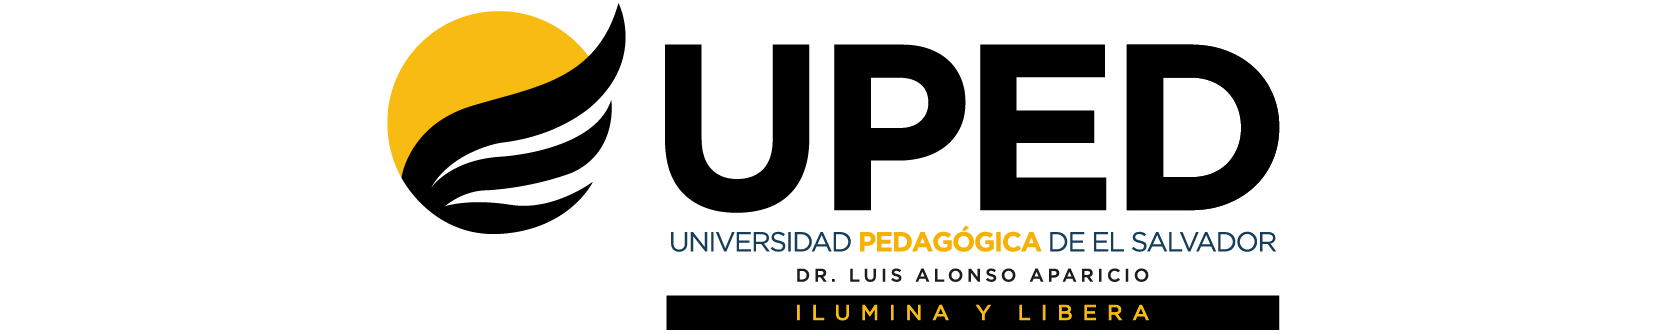 Universidad Pedagógica de El Salvador